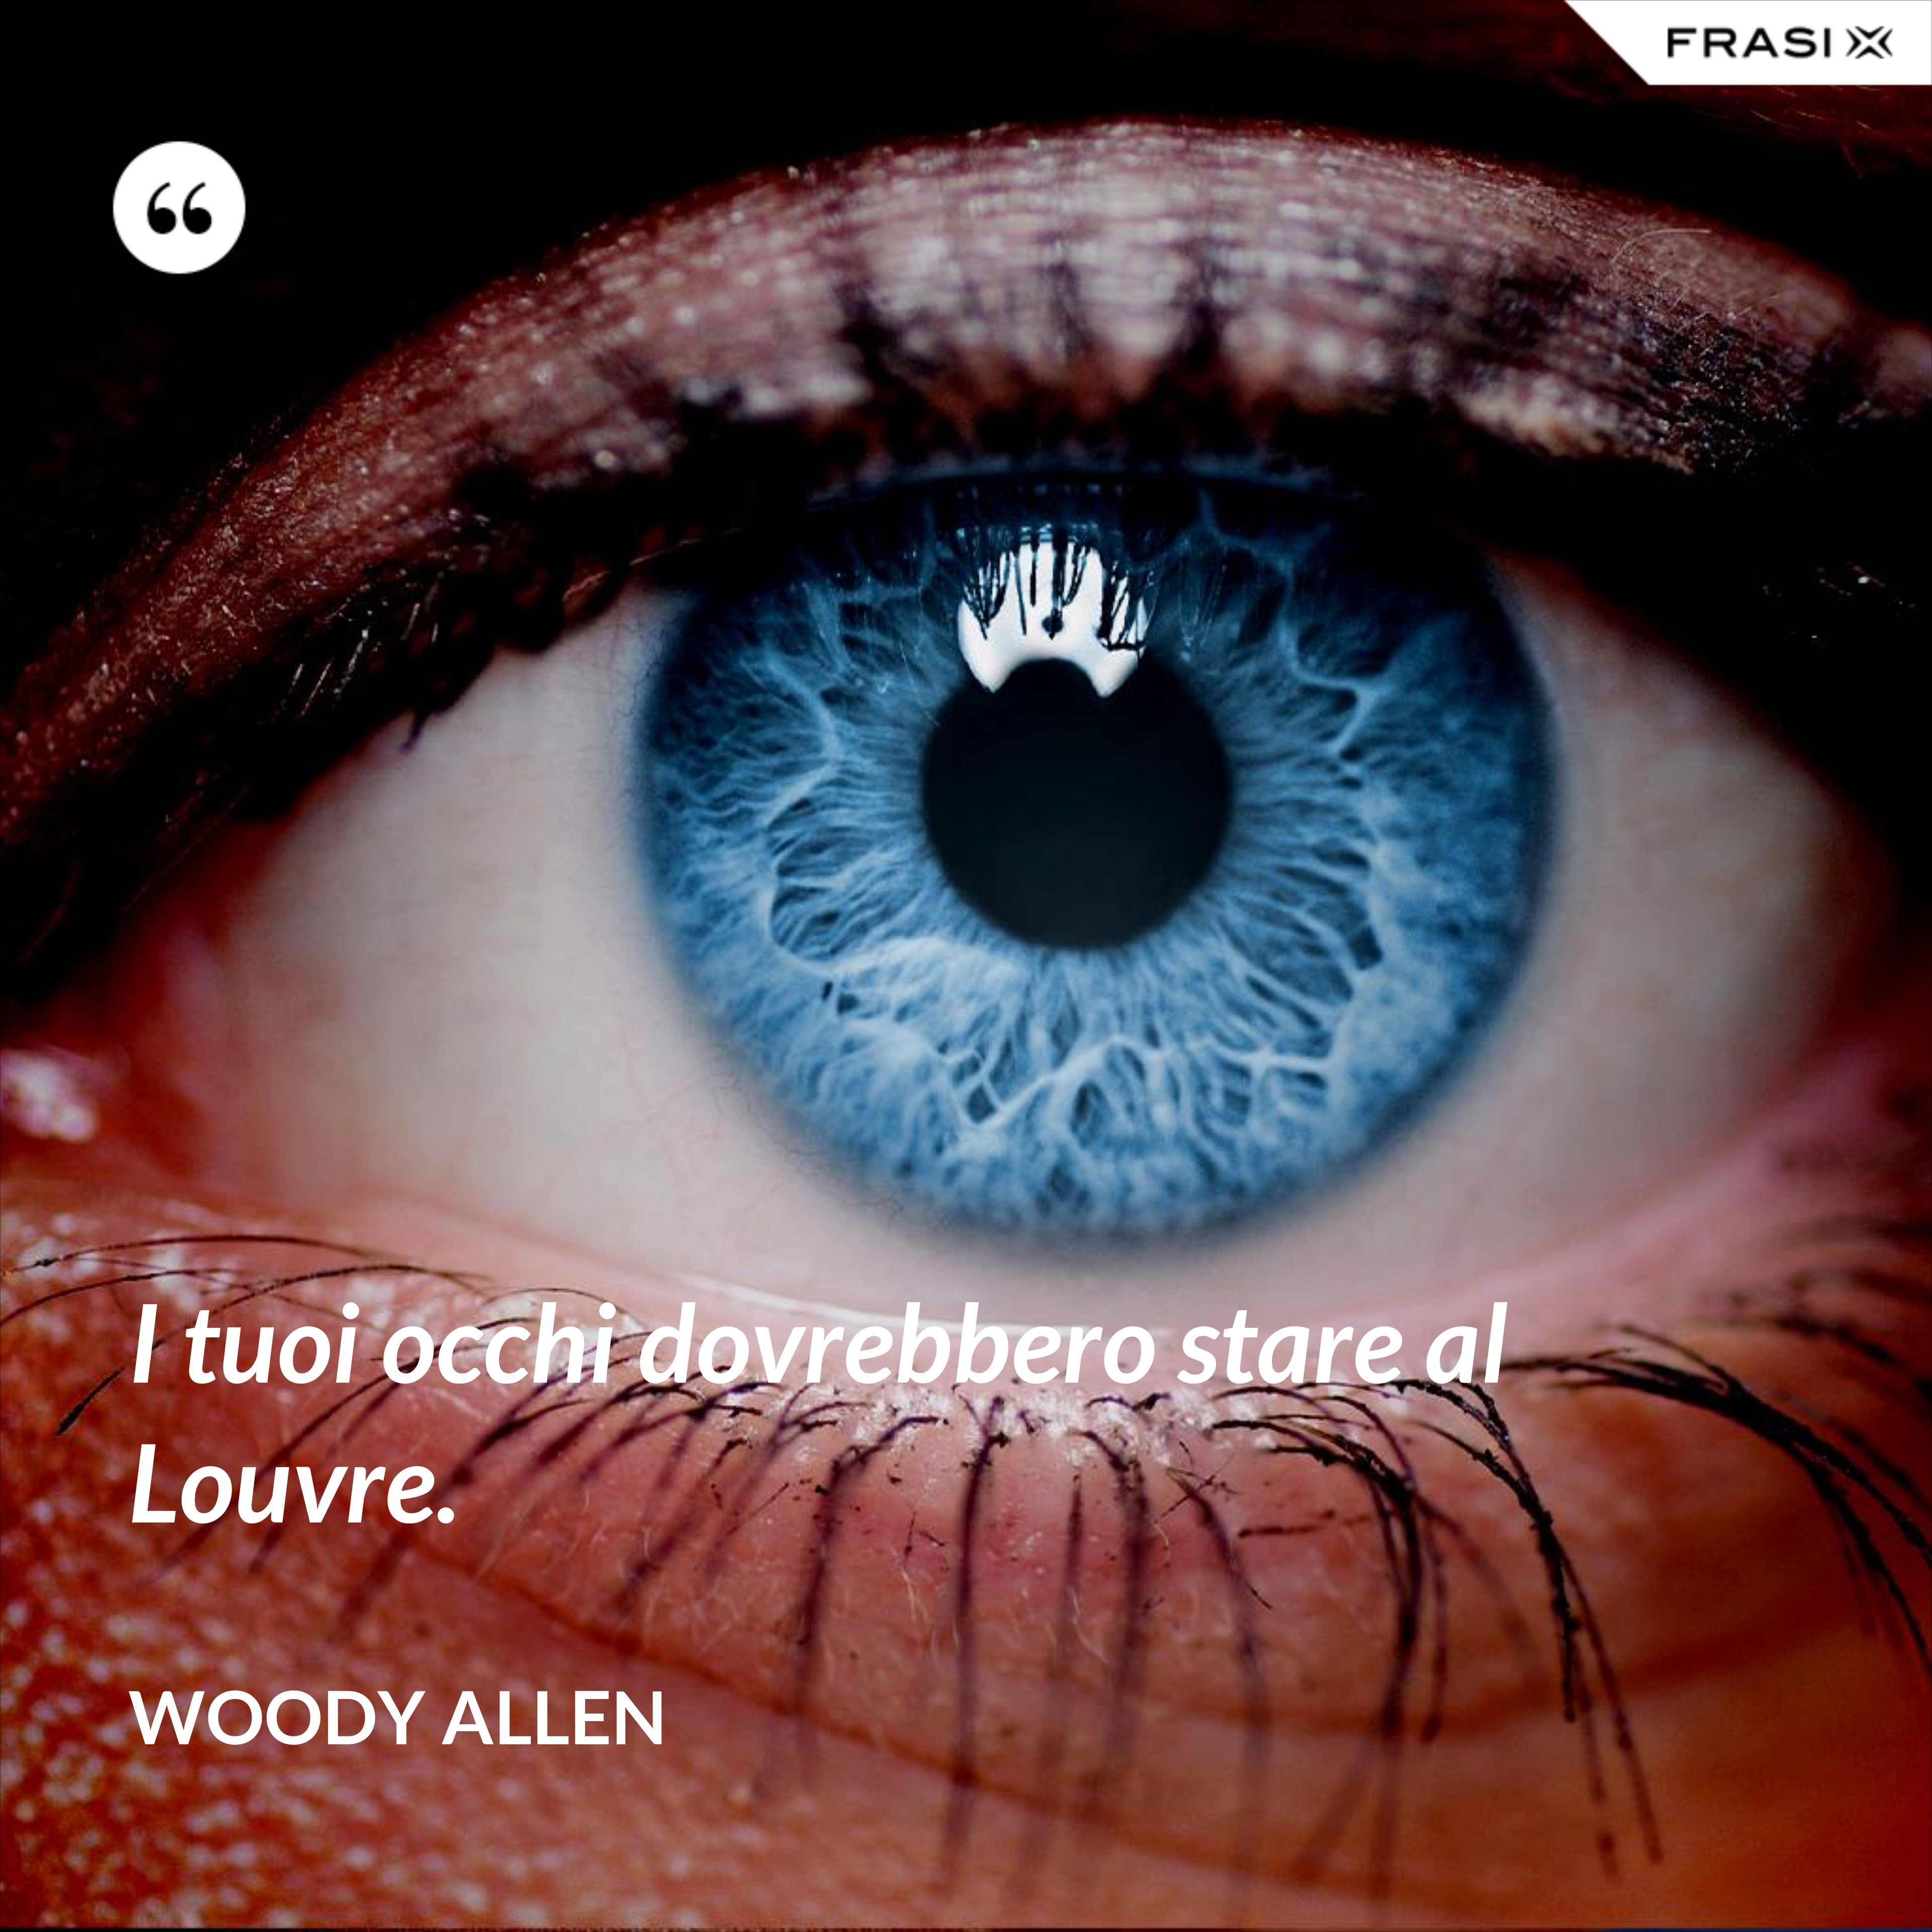 I tuoi occhi dovrebbero stare al Louvre. - Woody Allen